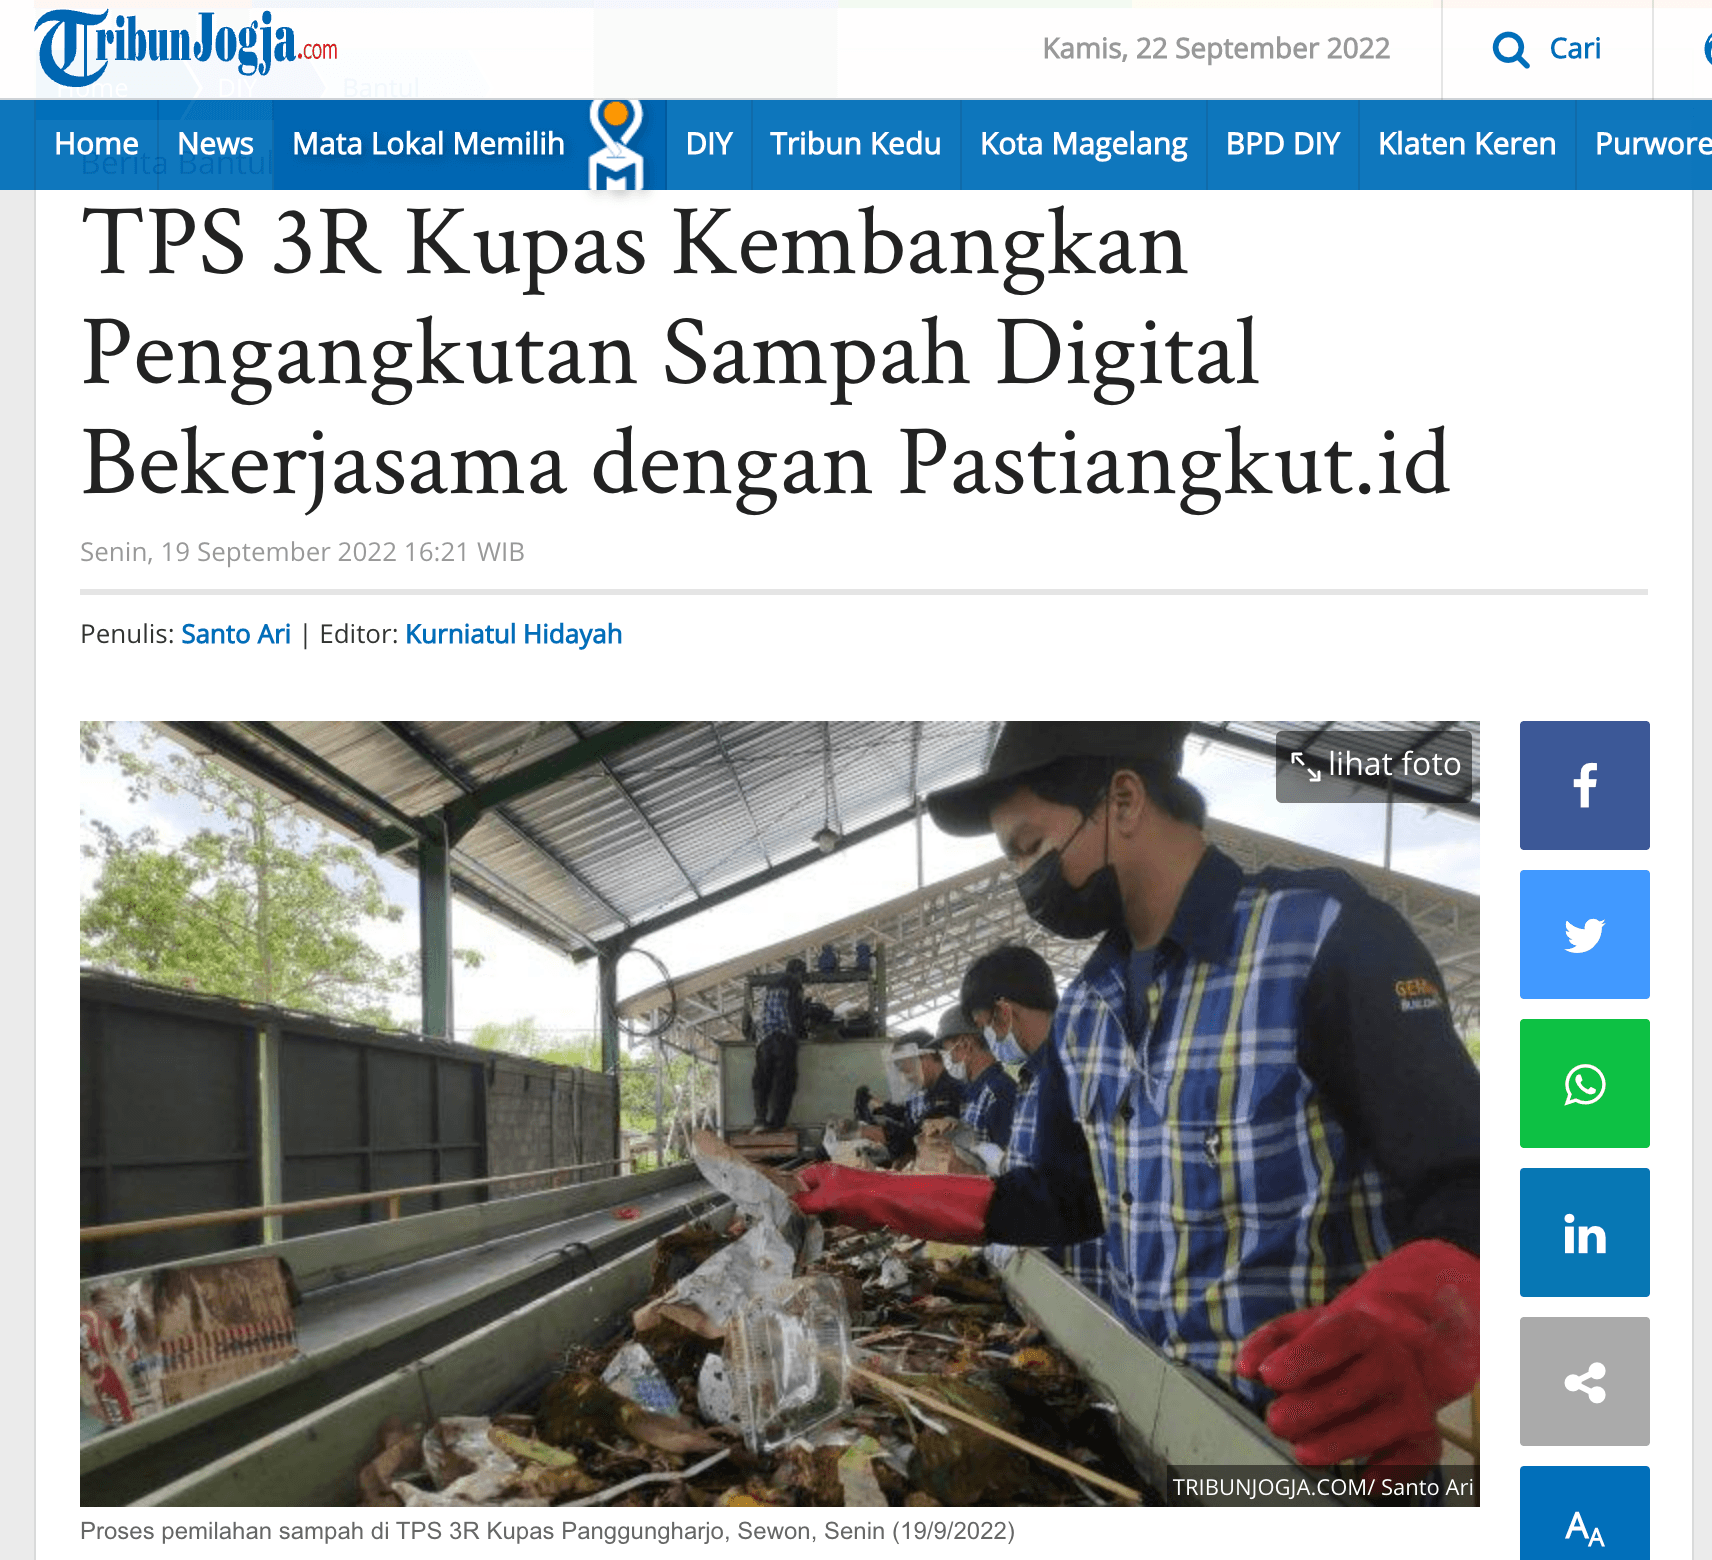 TPS 3R Kupas Kembangkan Pengangkutan Sampah Digital Bekerjasama dengan Pastiangkut.id